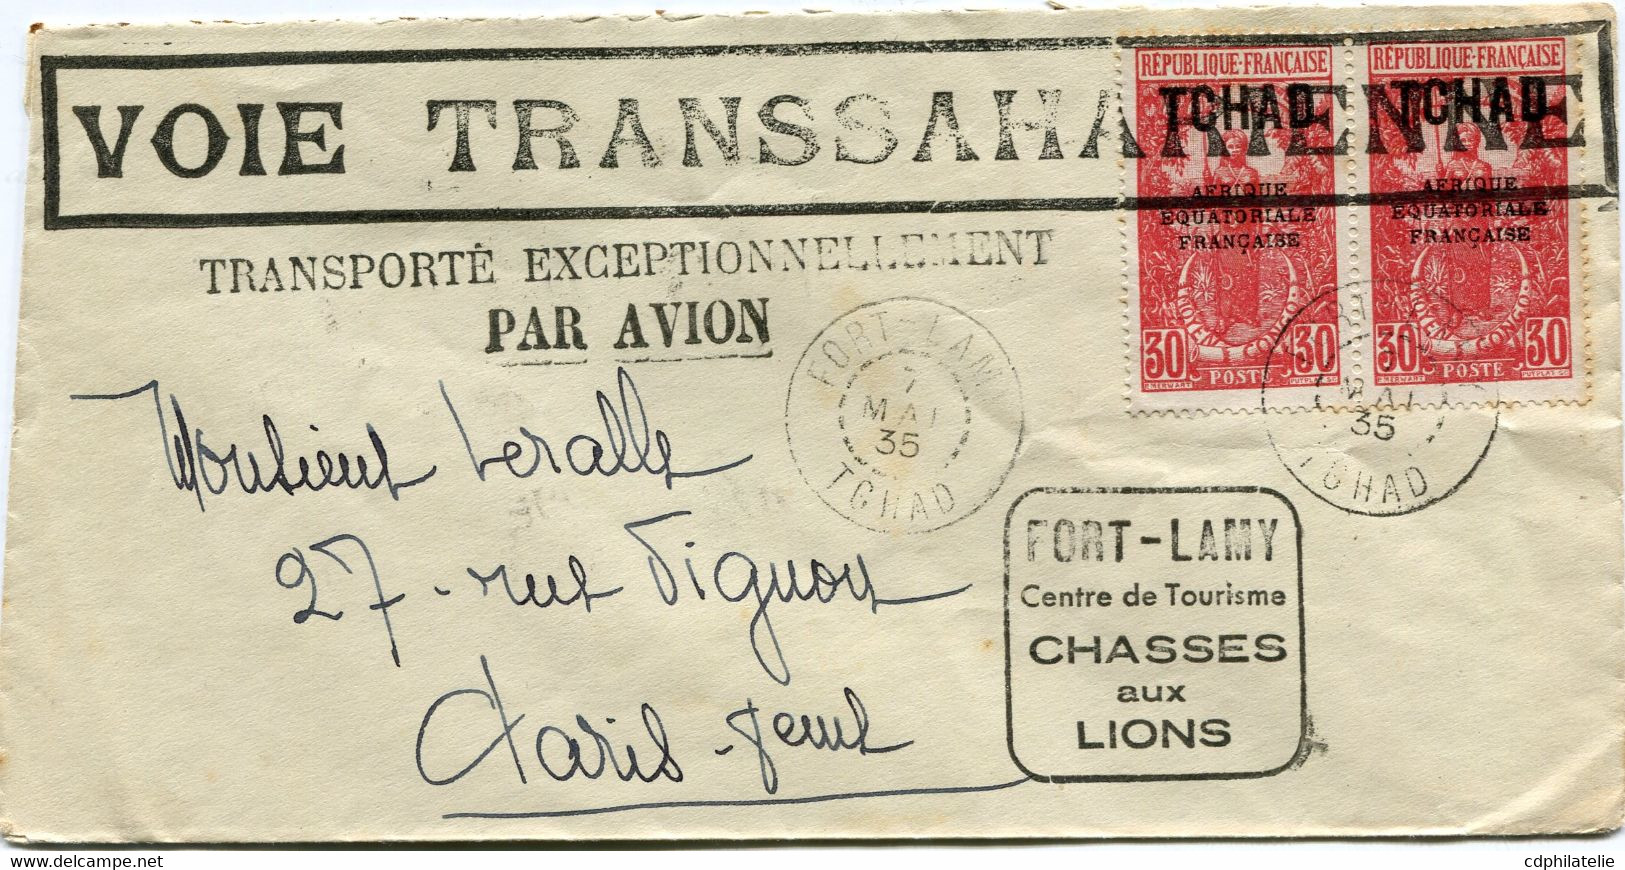 TCHAD LETTRE AVEC CACHET "VOIE TRANSSAHARIENNE" TRANSPORTE.....PAR AVION DEPART FORT-LAMY 7 MAI 35 + CACHET....AUX LIONS - Covers & Documents